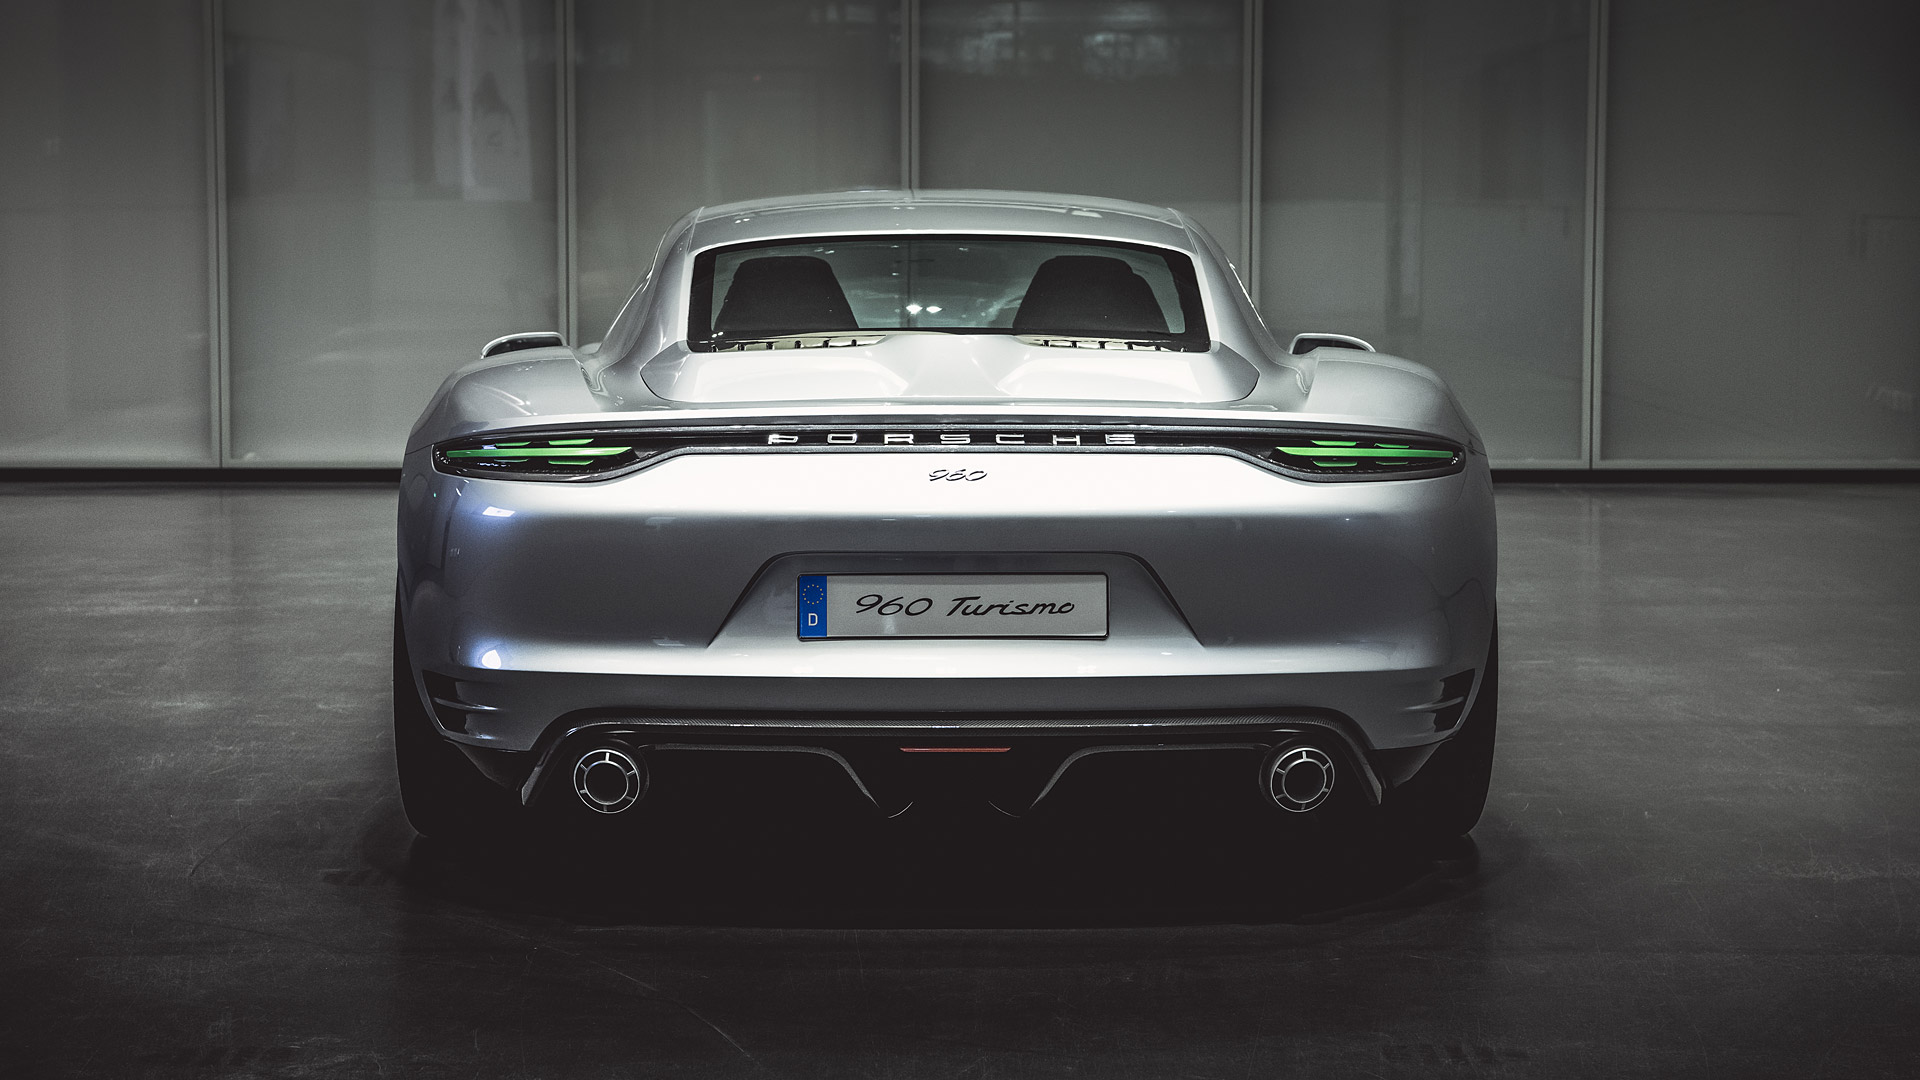  2016 Porsche 960 Vision Turismo Concept Wallpaper.